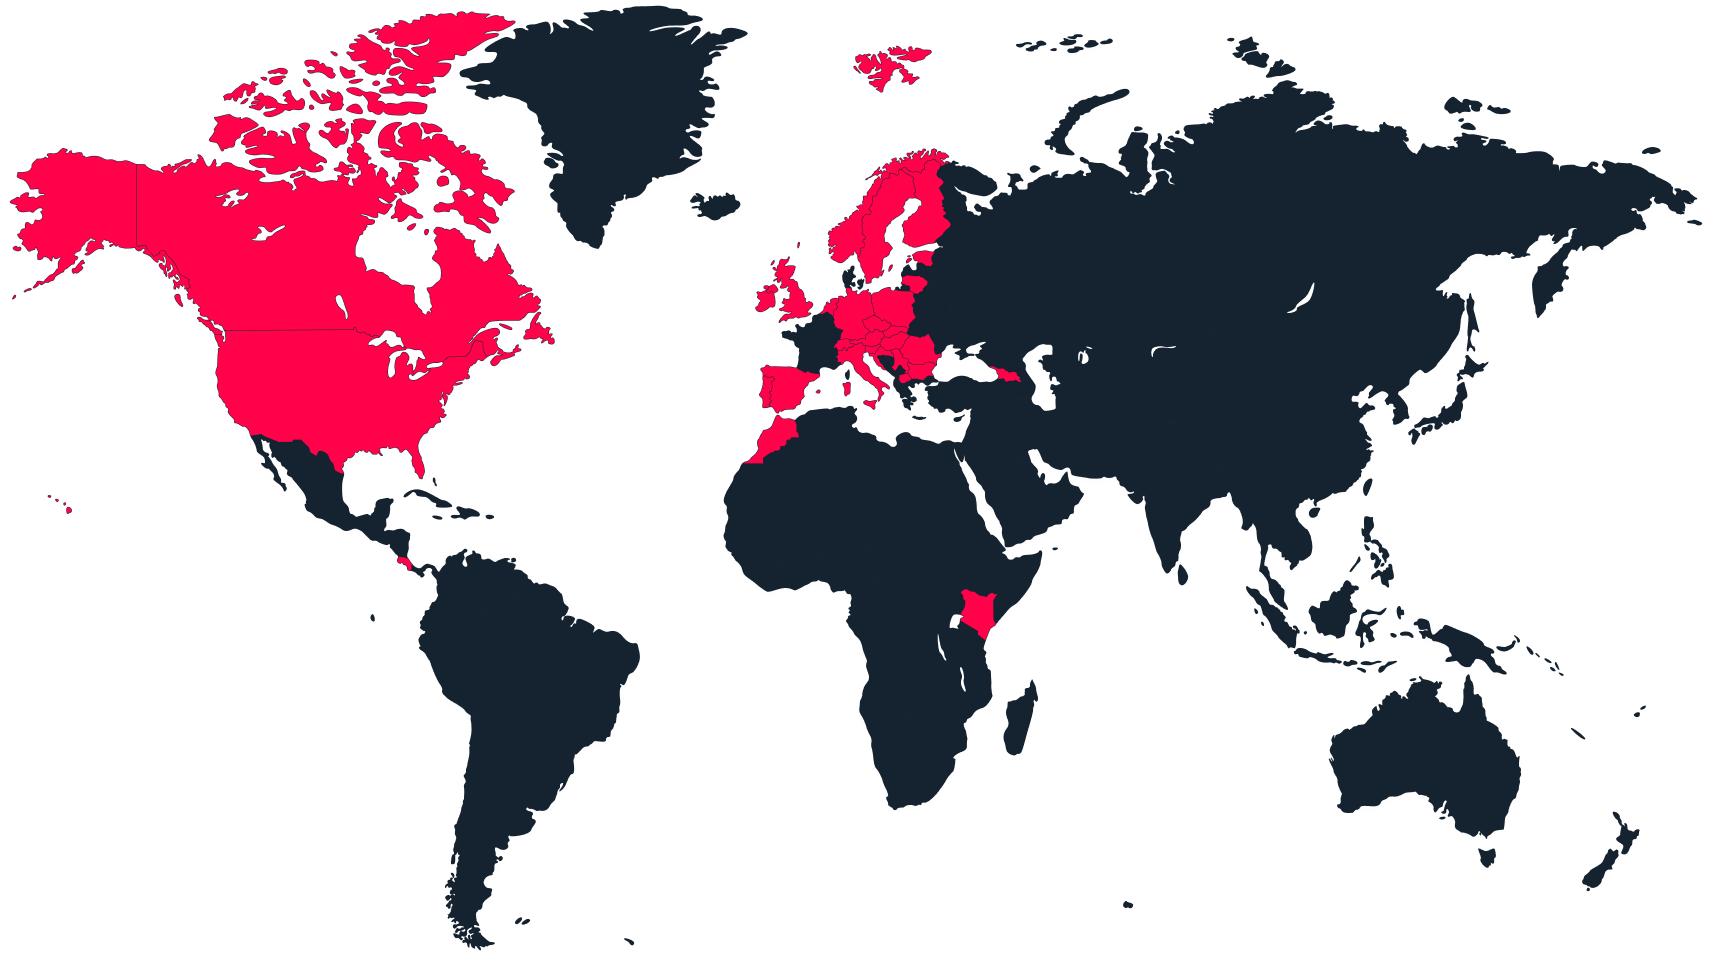 Karta svijeta s aktivnim državama označenim crvenom bojom